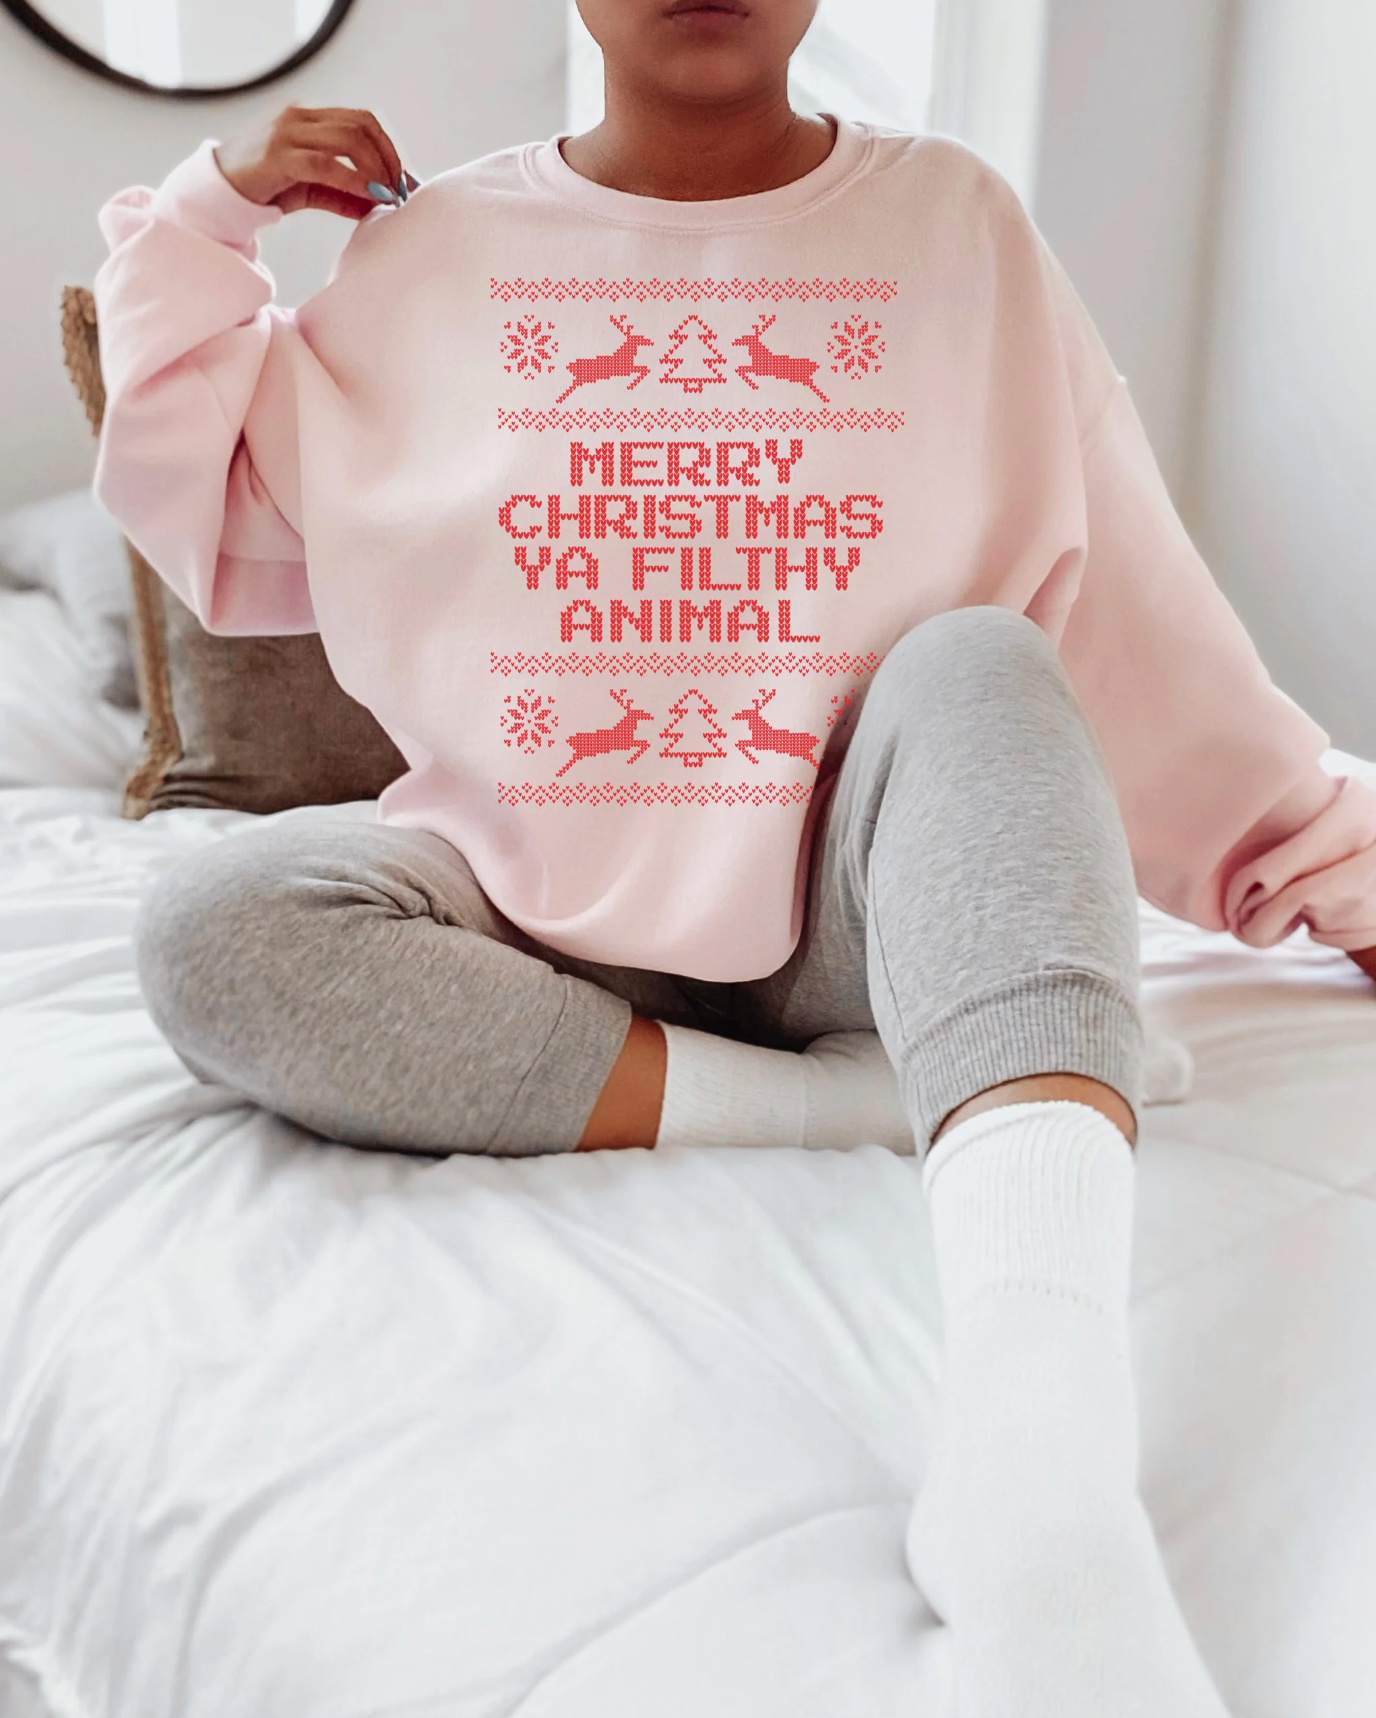 'Merry Christmas Ya Filthy Animal' Sweatshirt